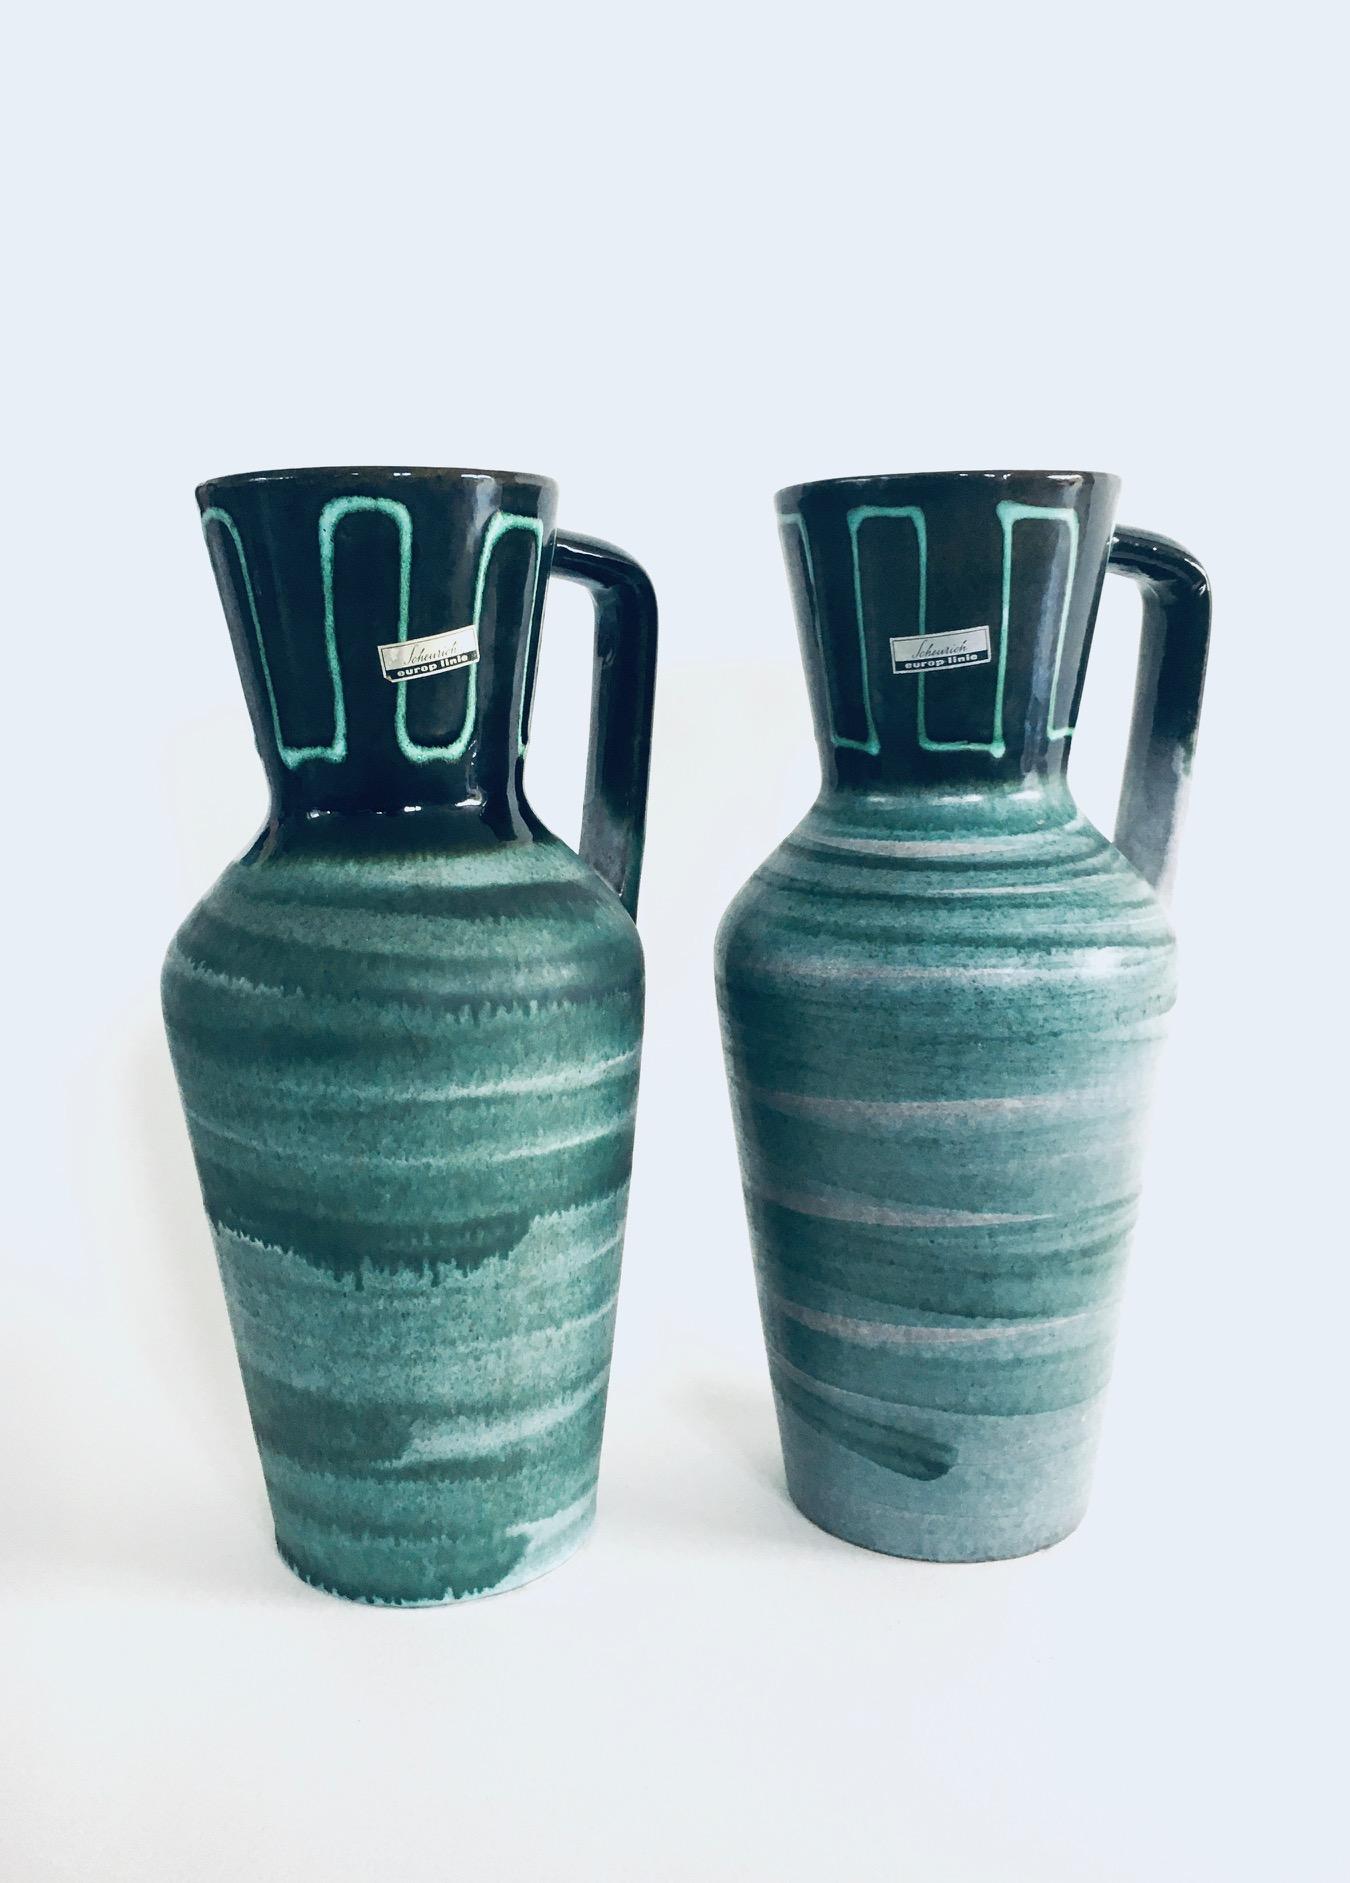 Vintage Midcentury Modern Art Studio Pottery Jug Vase Set von Scheurich Europ Linie, Westdeutschland 1960er Jahre. Modell 407-35. Dunkel- bis hellgrün glasierter Topf. In sehr gutem Zustand. Jede Vase misst 18cm x 15cm x 35cm. 
Verkauft als 2er-Set